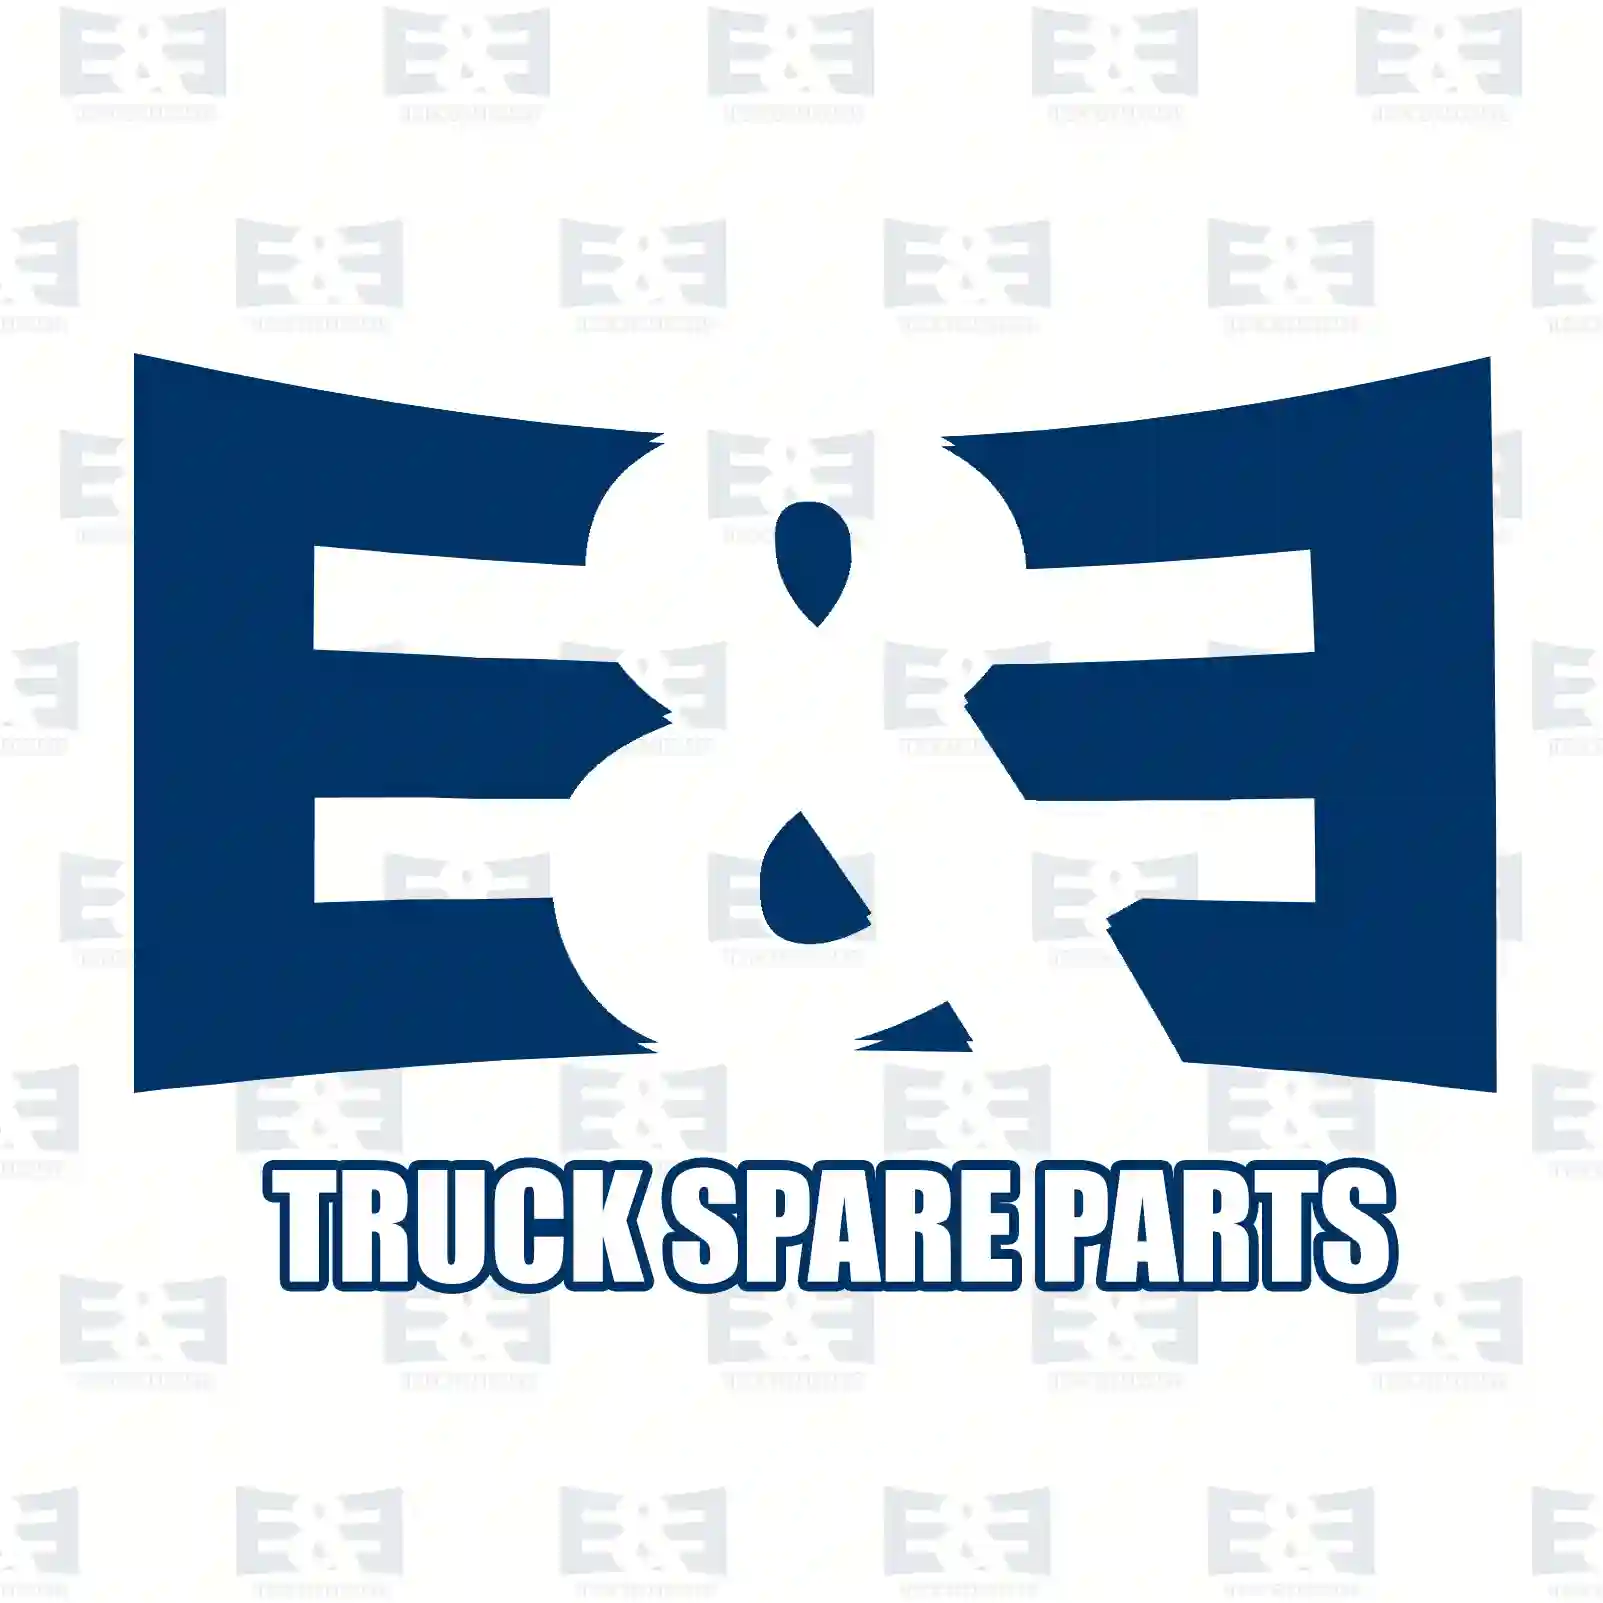 Bushing, 2E2283201, 9493250050, 9493250050, ||  2E2283201 E&E Truck Spare Parts | Truck Spare Parts, Auotomotive Spare Parts Bushing, 2E2283201, 9493250050, 9493250050, ||  2E2283201 E&E Truck Spare Parts | Truck Spare Parts, Auotomotive Spare Parts